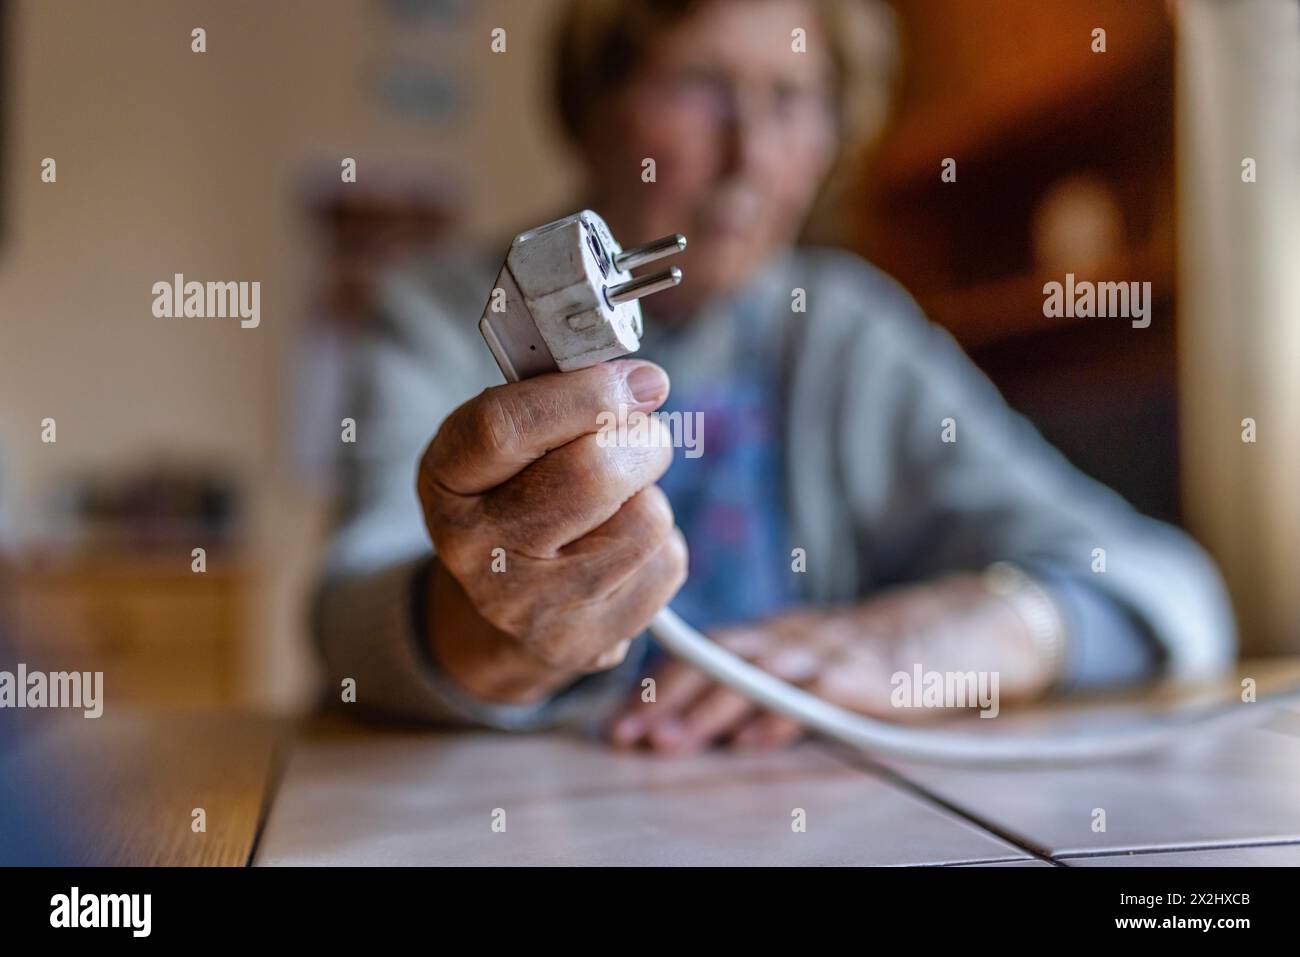 Personne âgée tenant un câble d'alimentation avec prise dans la main à la maison, symbolisant les coûts de l'énergie et la pauvreté, Cologne, Rhénanie du Nord-Westphalie, Allemagne Banque D'Images